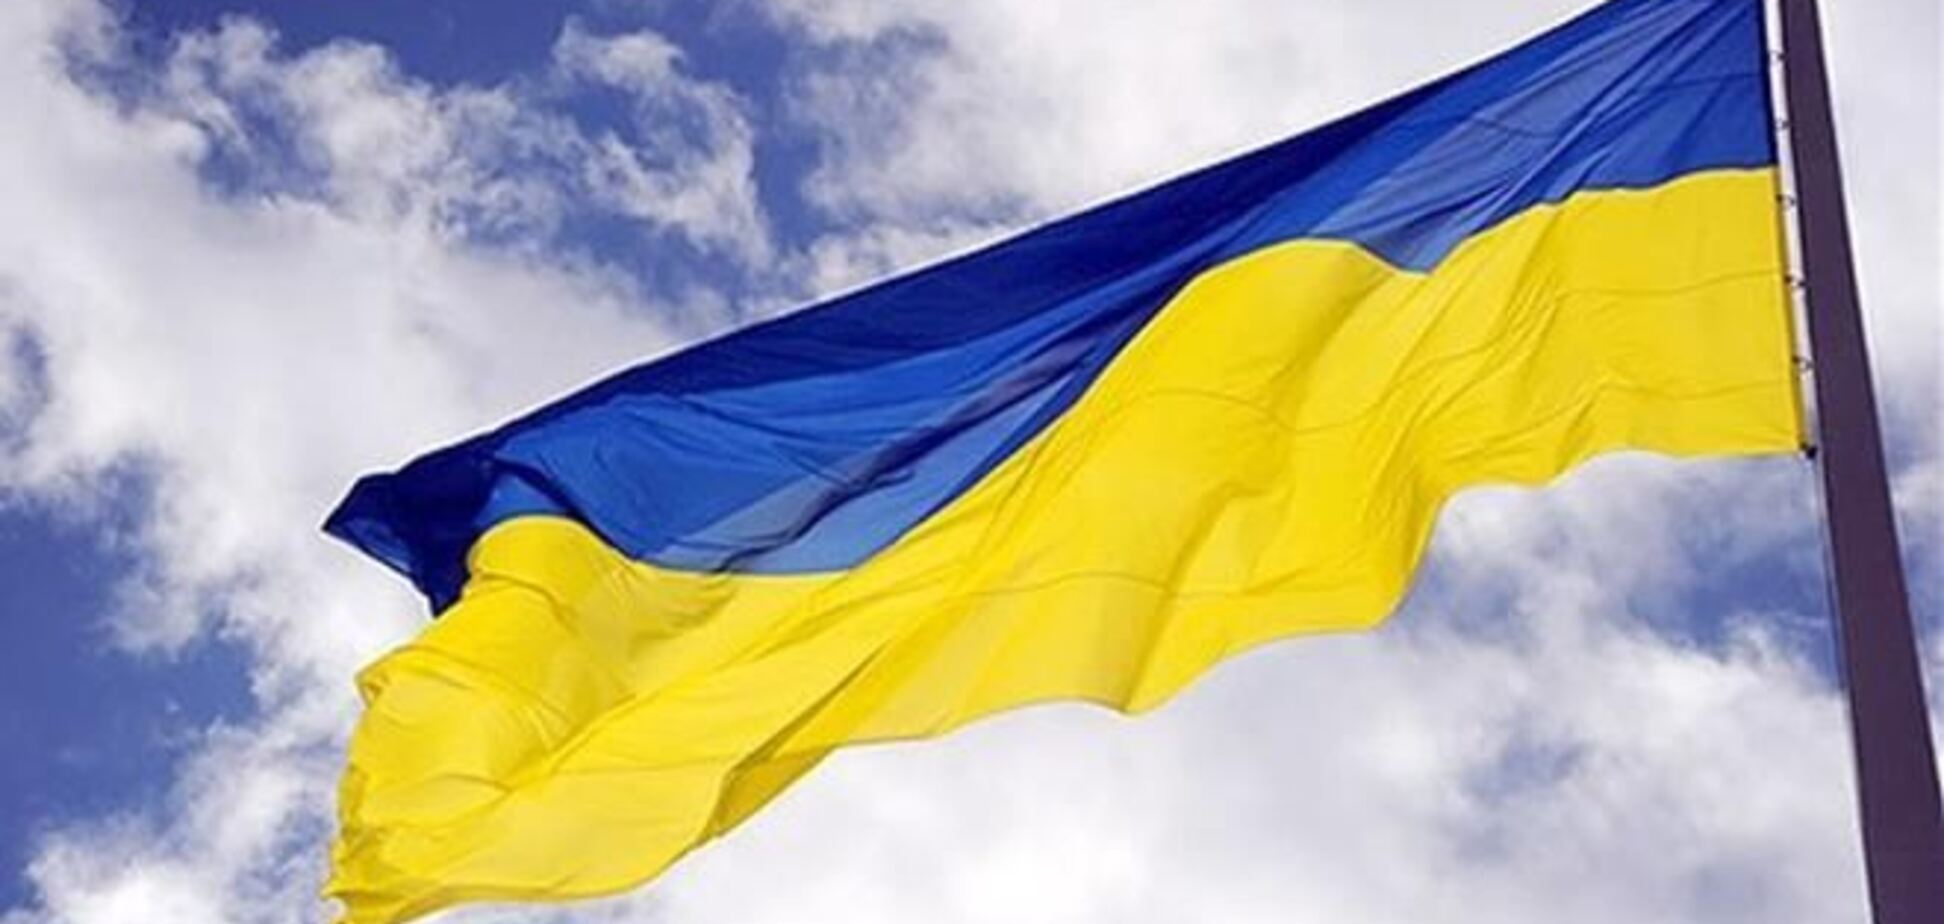 Над Автобат ВМС в Бахчисараї підняли прапор України